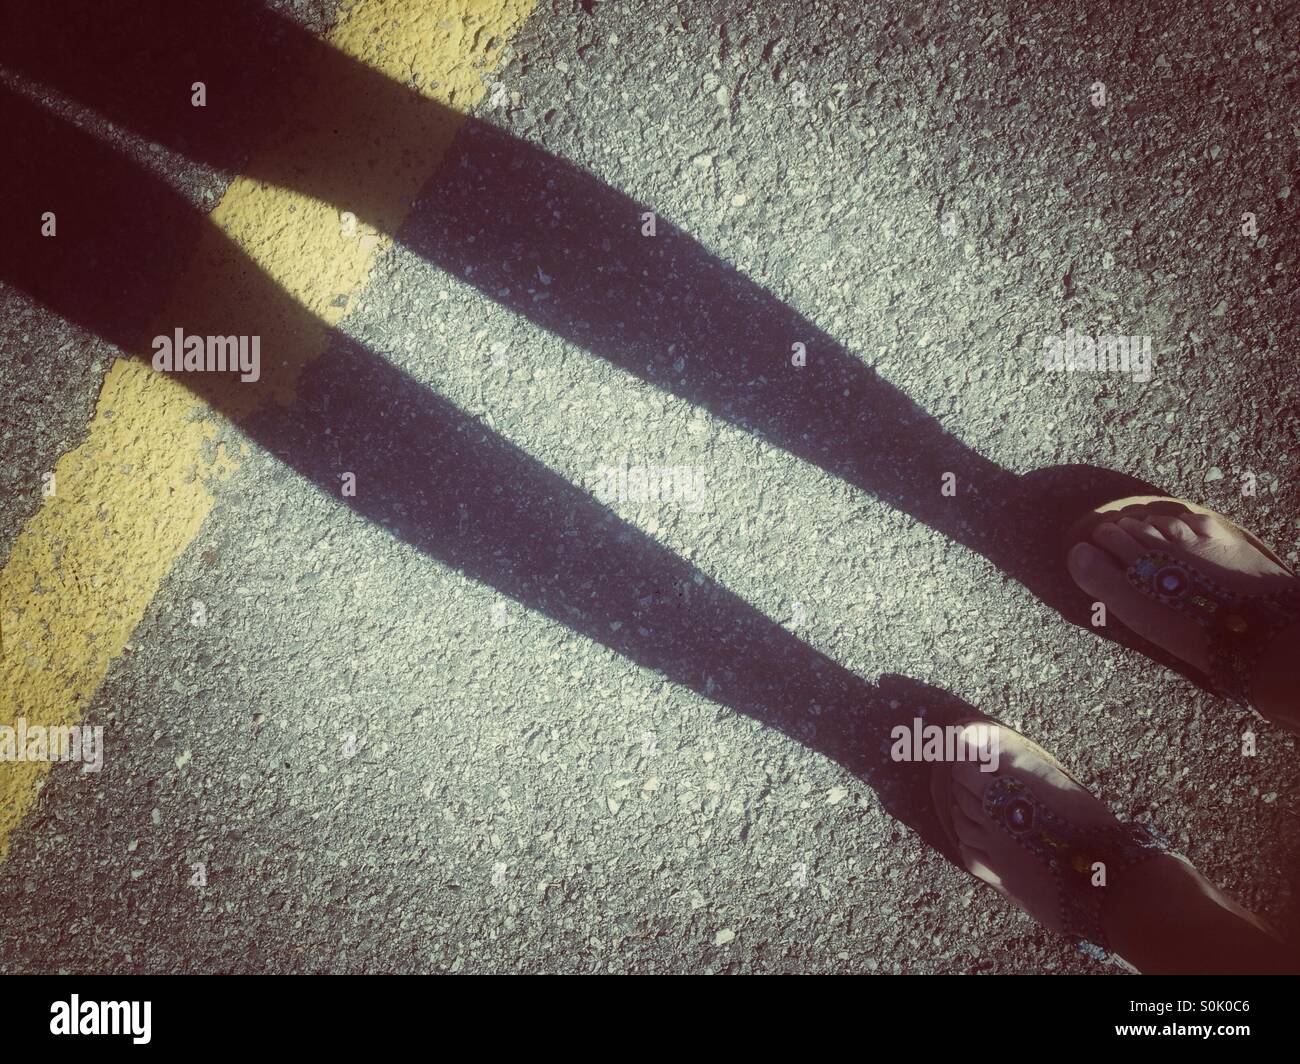 Ombra di donna di gambe e piedi in sandali estivi sulla strada con striscia gialla. Grunge retrò filtrato. Foto Stock